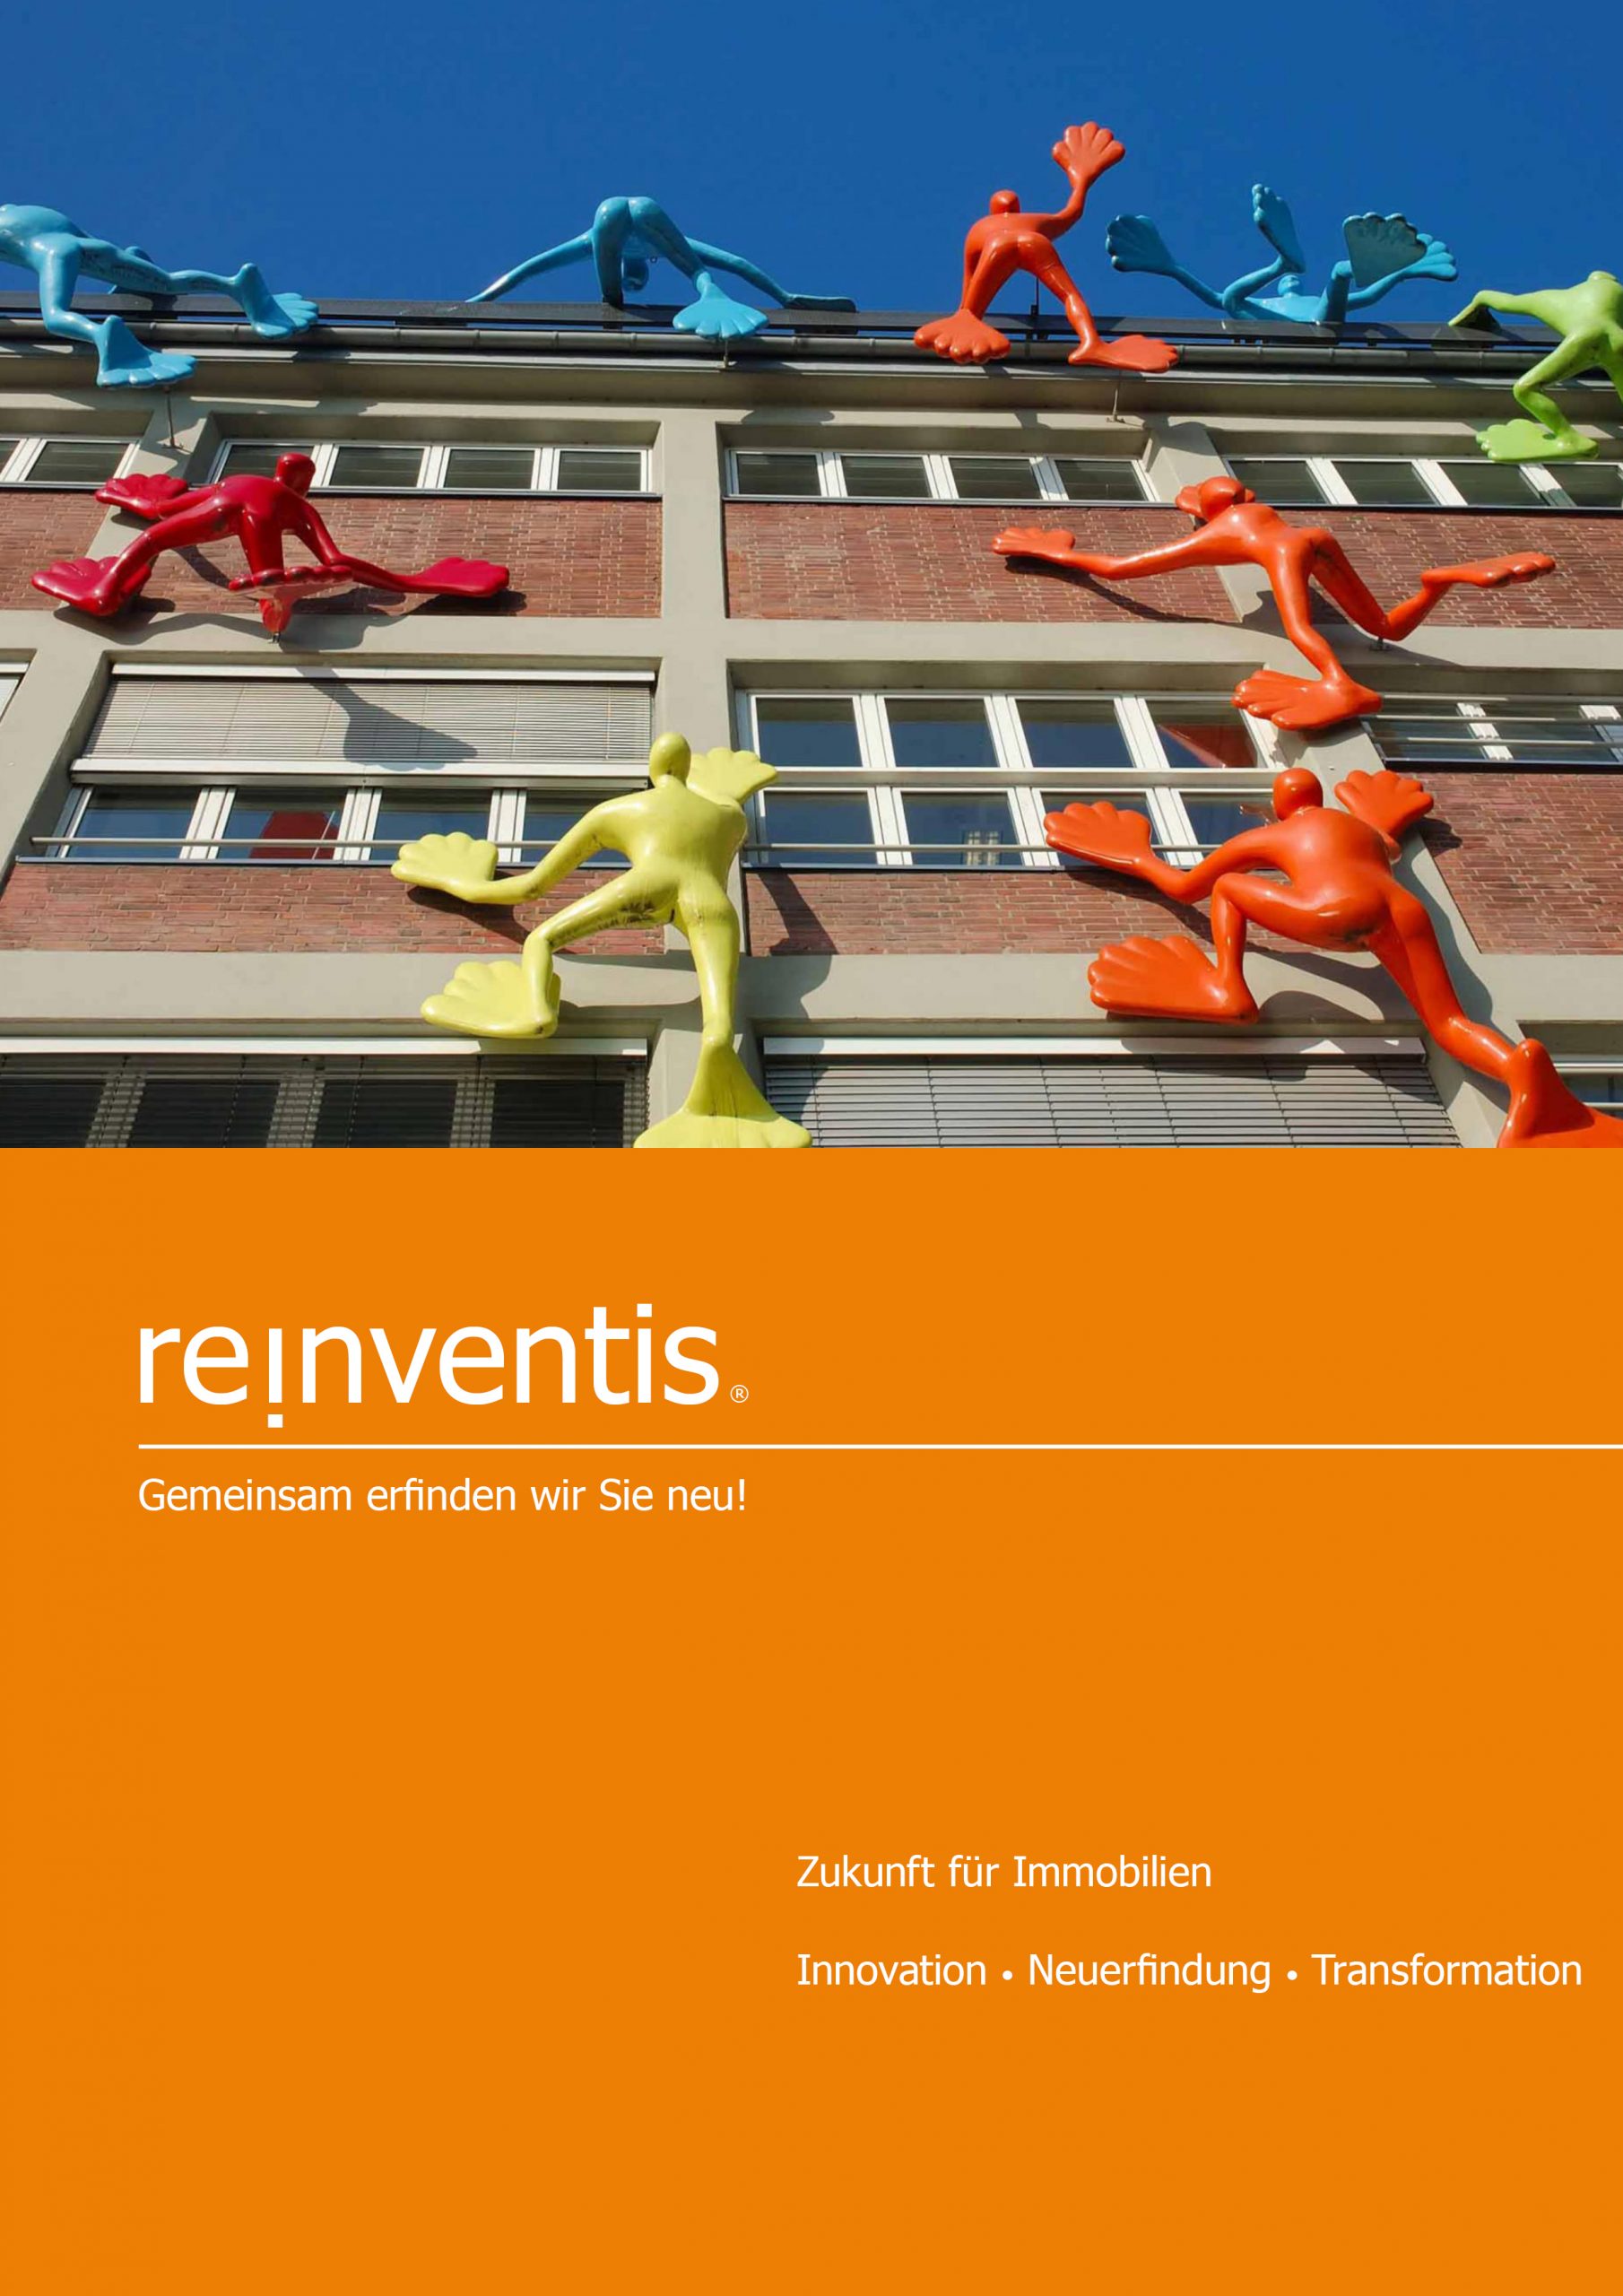 Zukunftsgestaltung für Immobilien - Innovation, Reinvention und Transformation - REINVENTIS - München